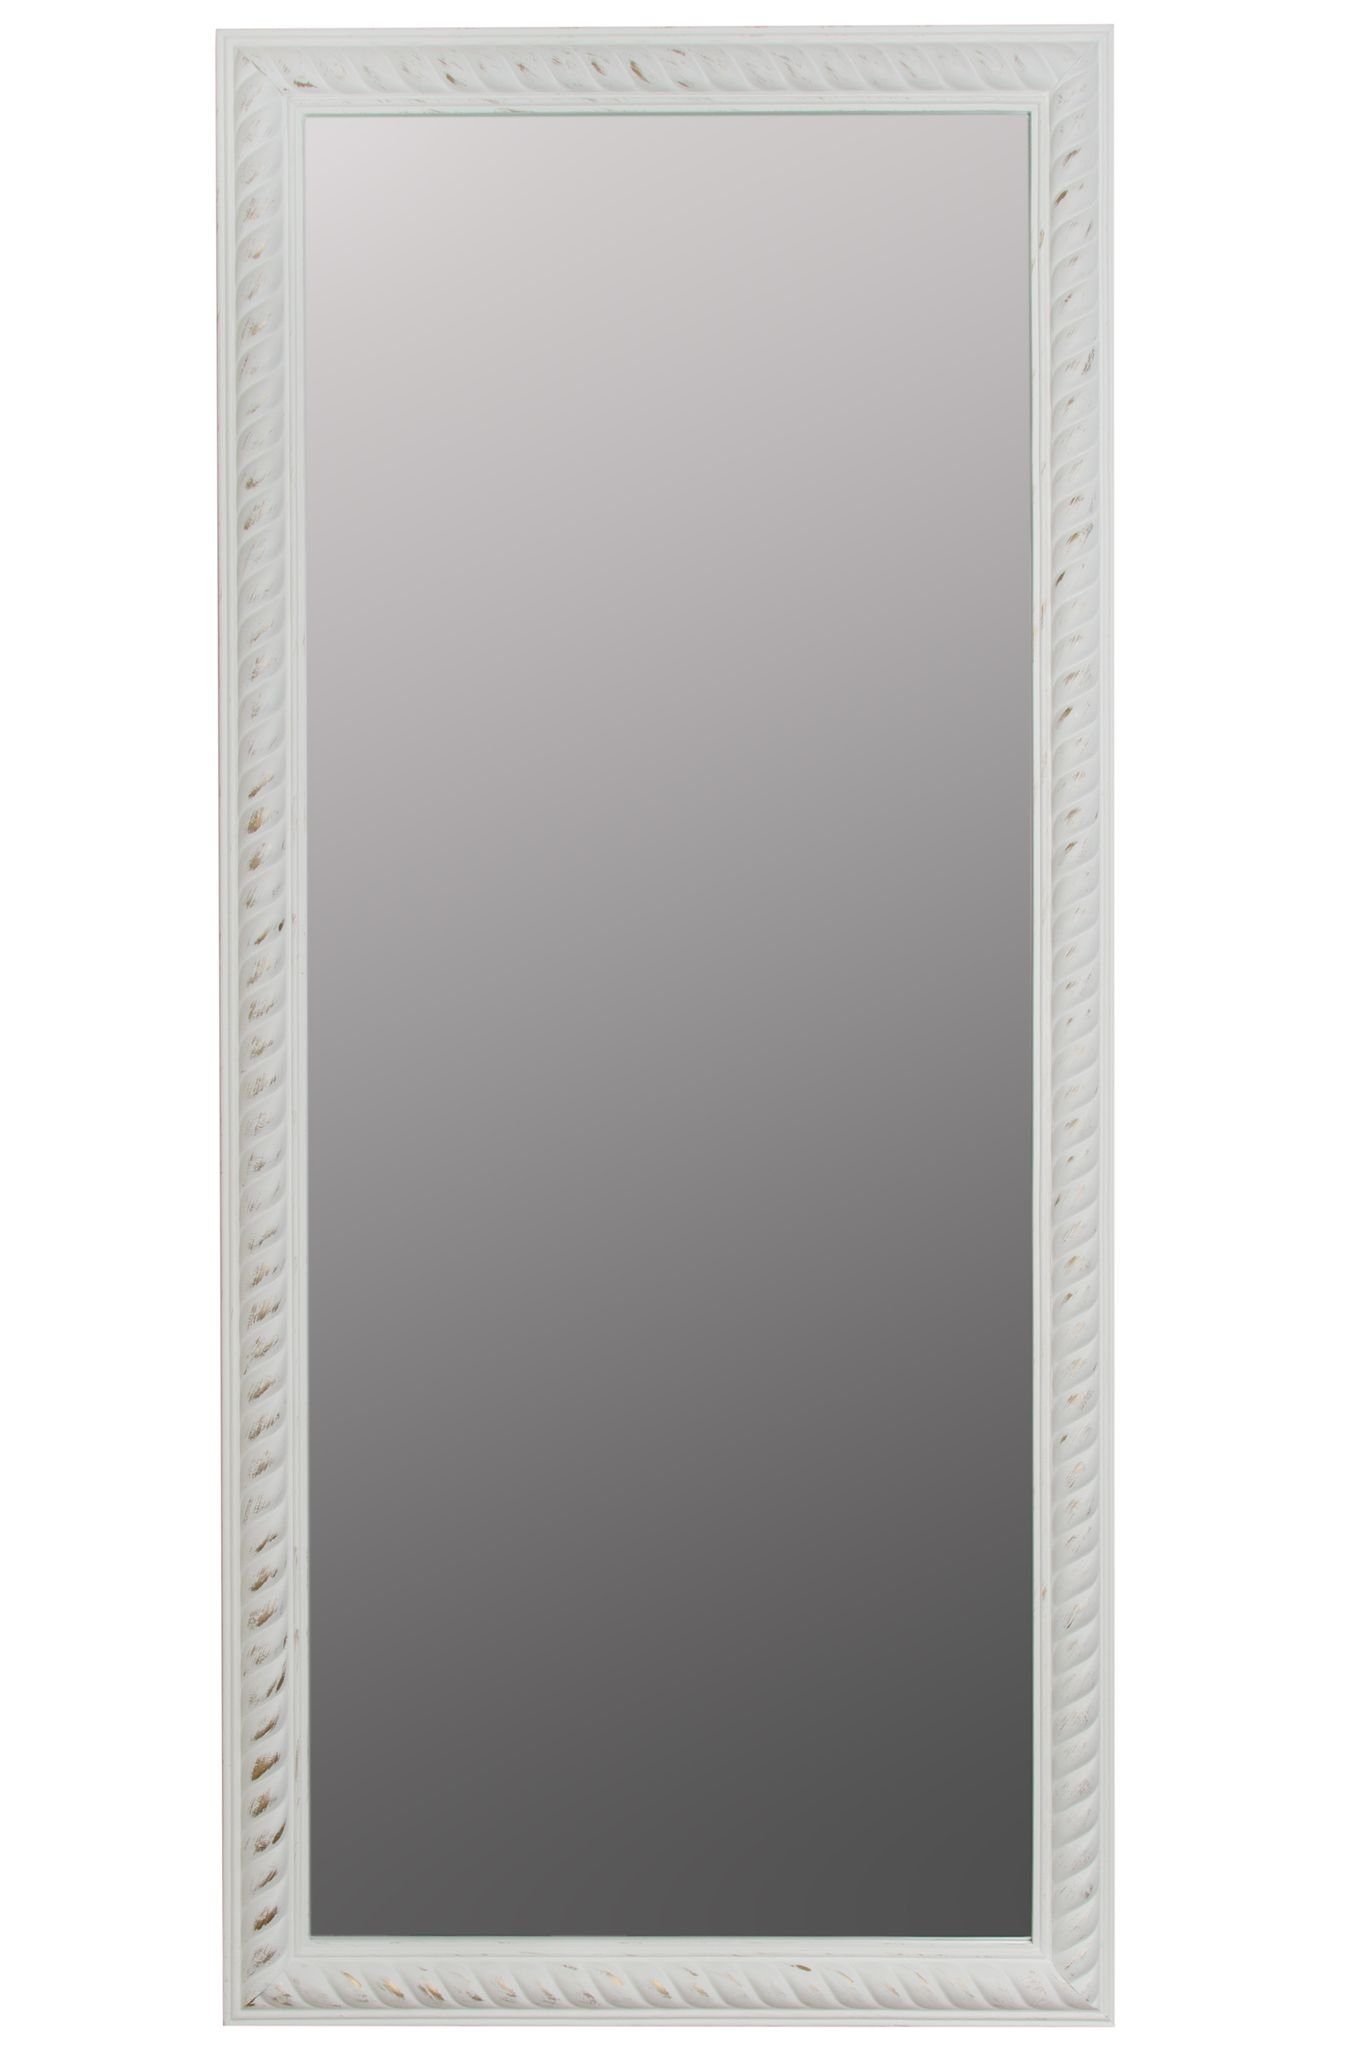 elbmöbel Wandspiegel Wandspiegel Badezimmerspiegel, Kordelrahmen | Spiegel Wandspiegel: weiß weiß cm 72x162x7 holz antik vintage weiß